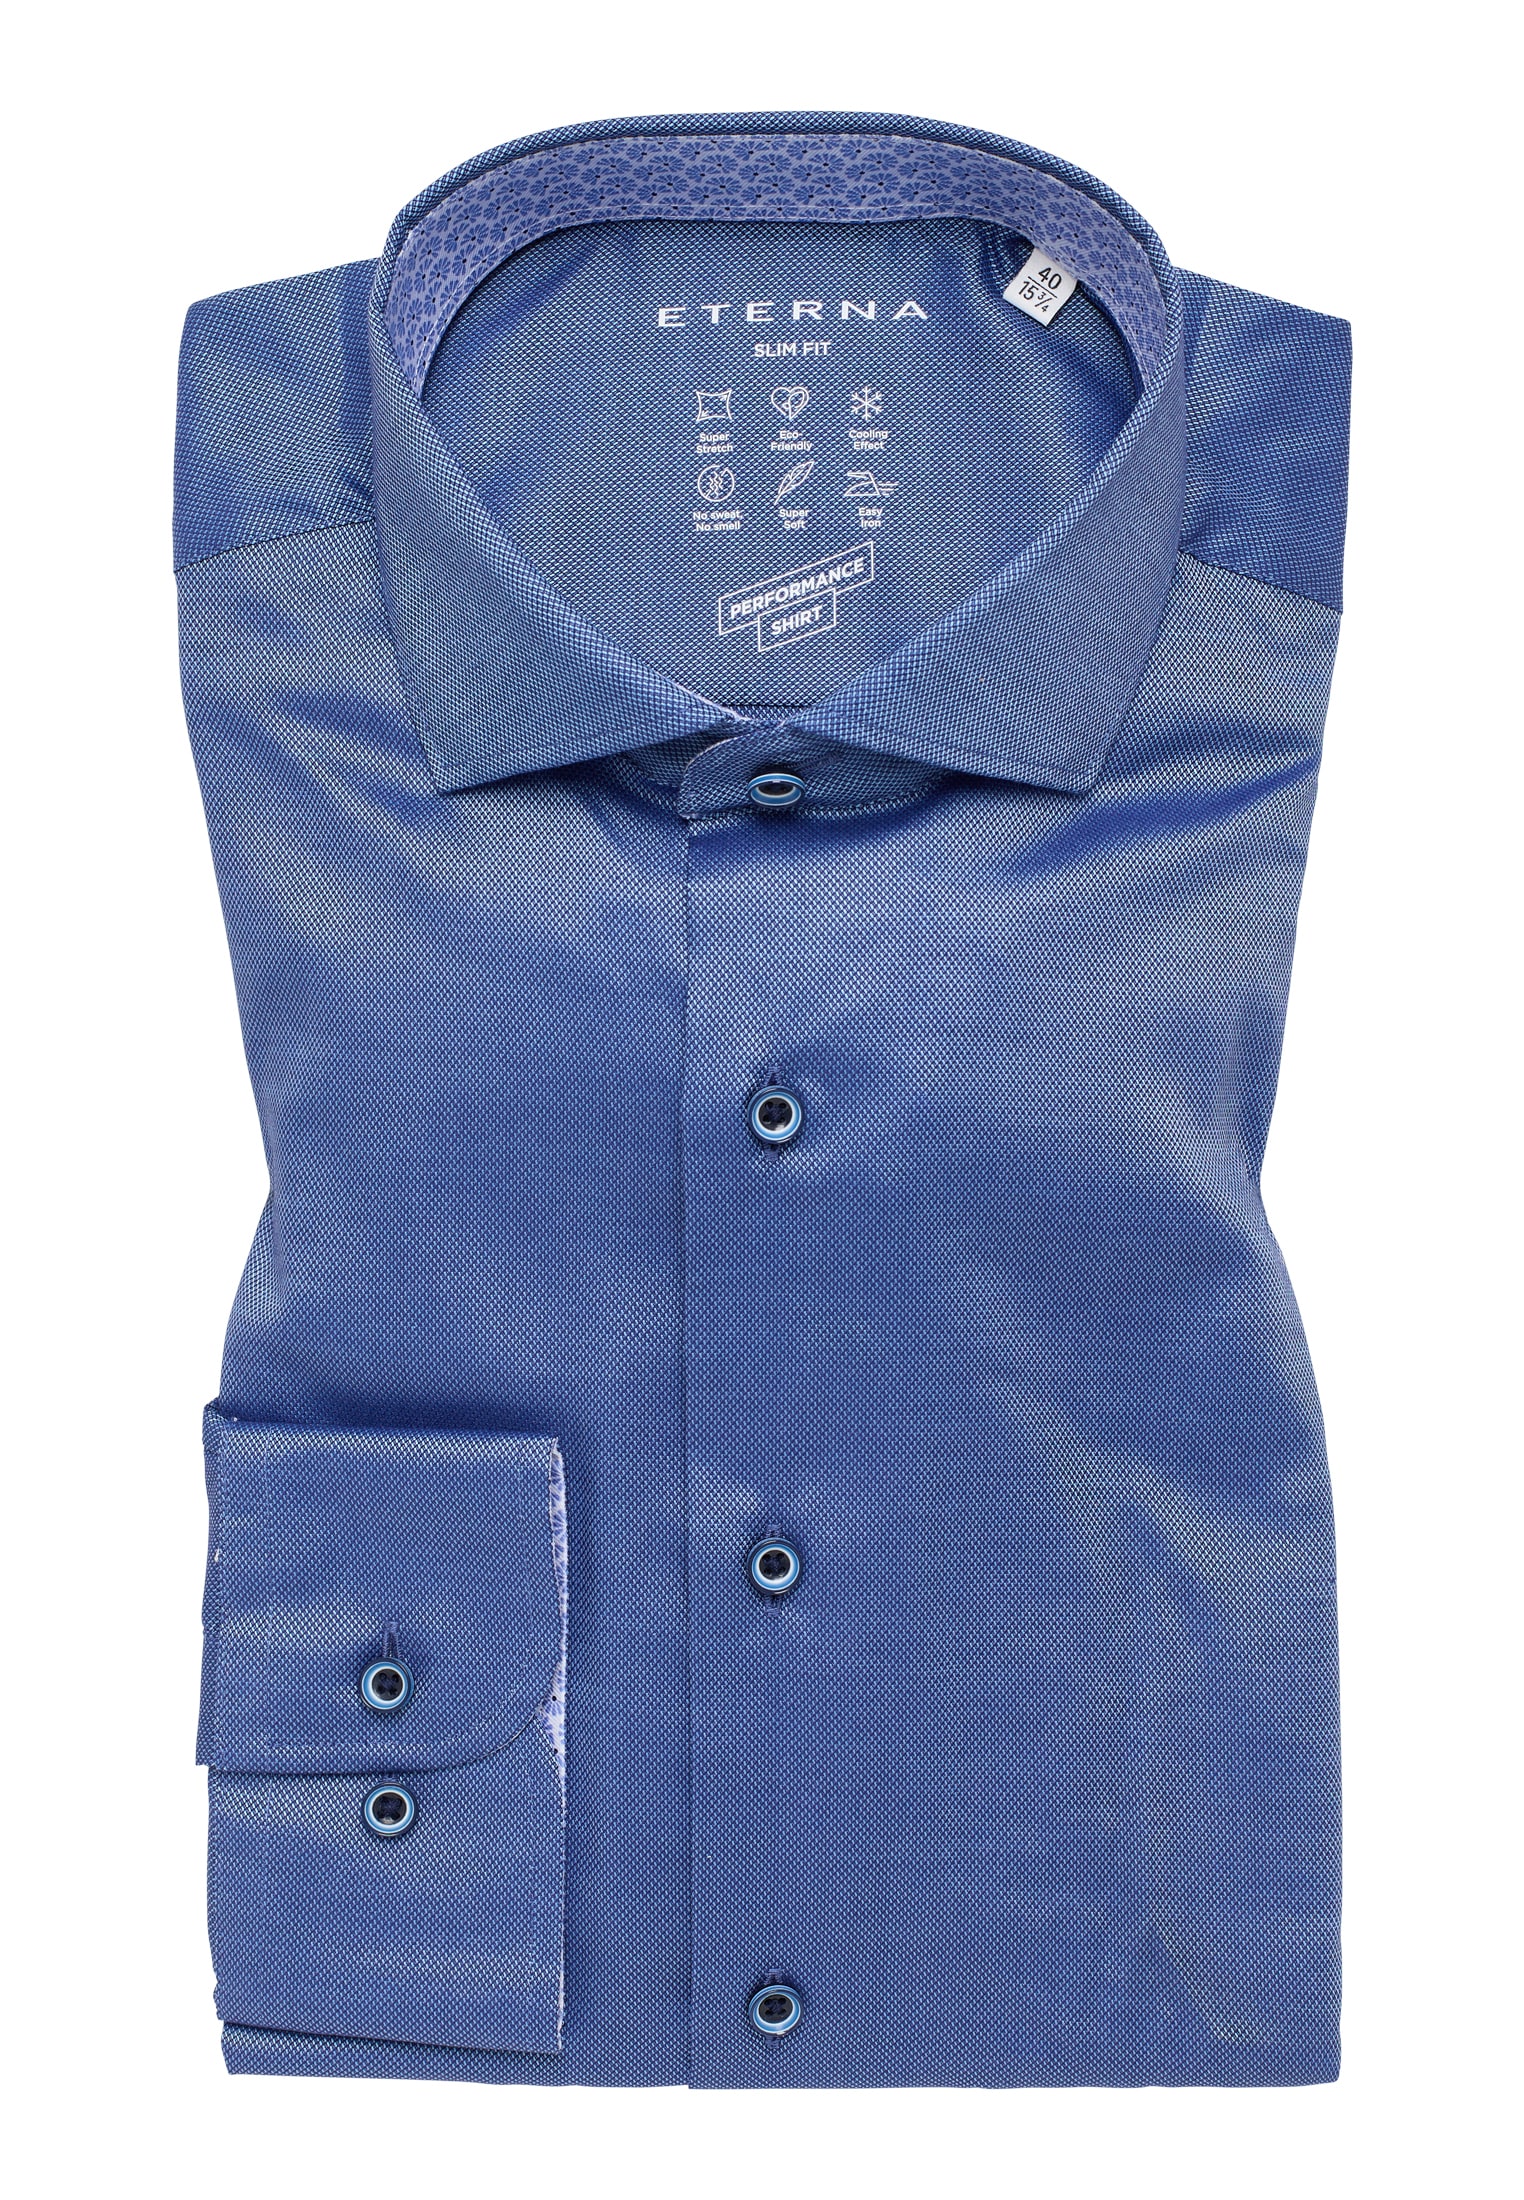 SLIM FIT Performance Shirt in | Langarm | 1SH12542-01-41-41-1/1 | strukturiert blau blau 41 